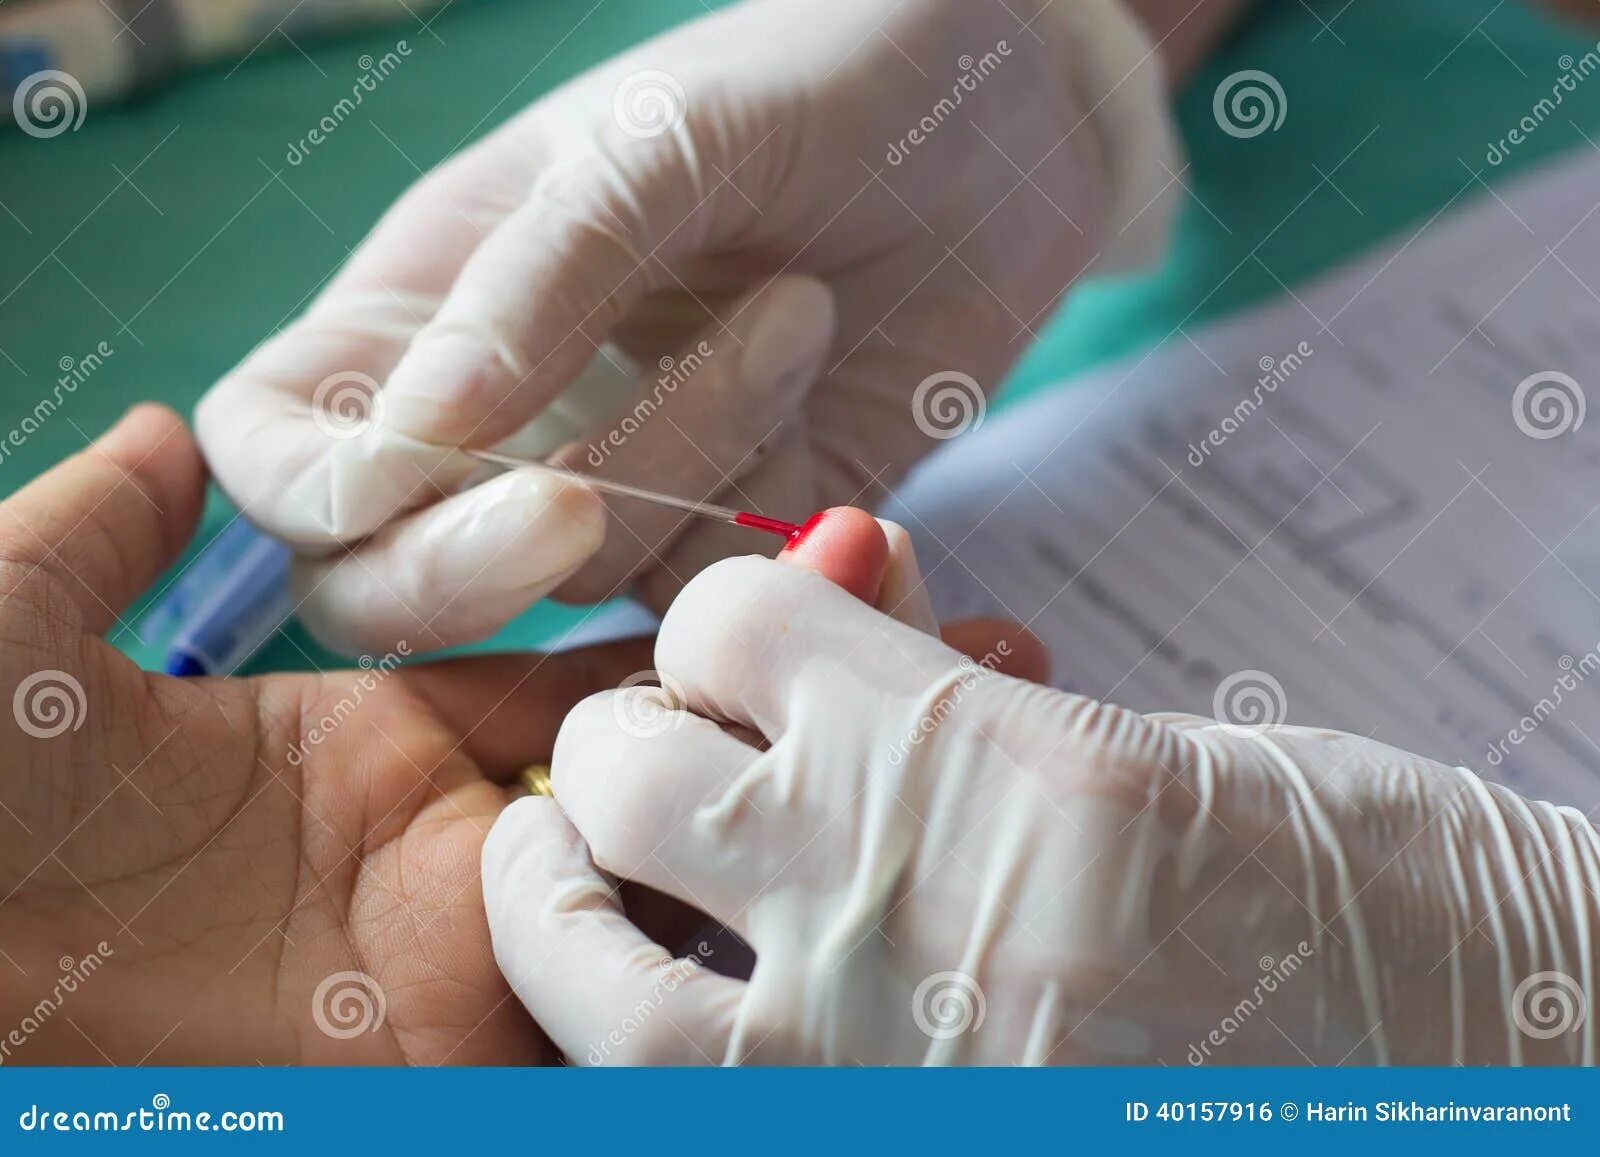 Стекло для взятия крови из пальца. Анализ крови из пальца можно ли есть